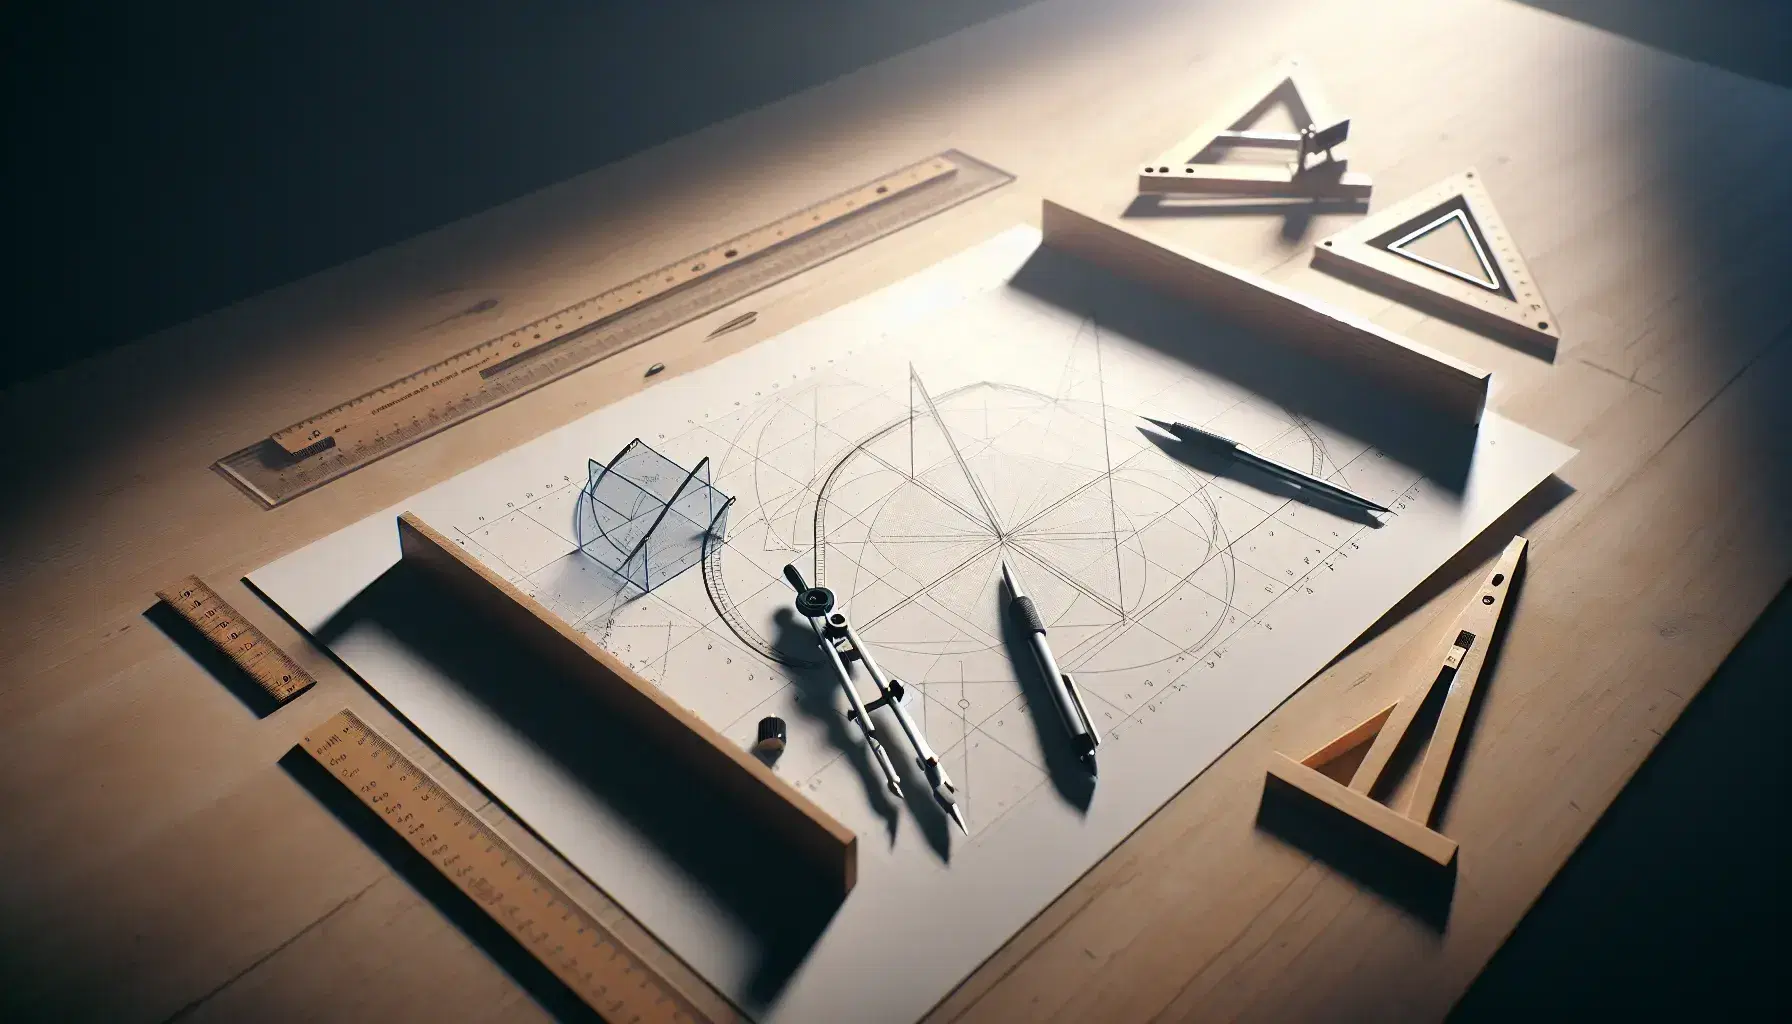 Mesa de trabajo de madera clara con instrumentos de dibujo técnico, papel con figuras geométricas, compás metálico, escuadras transparentes y regla T.